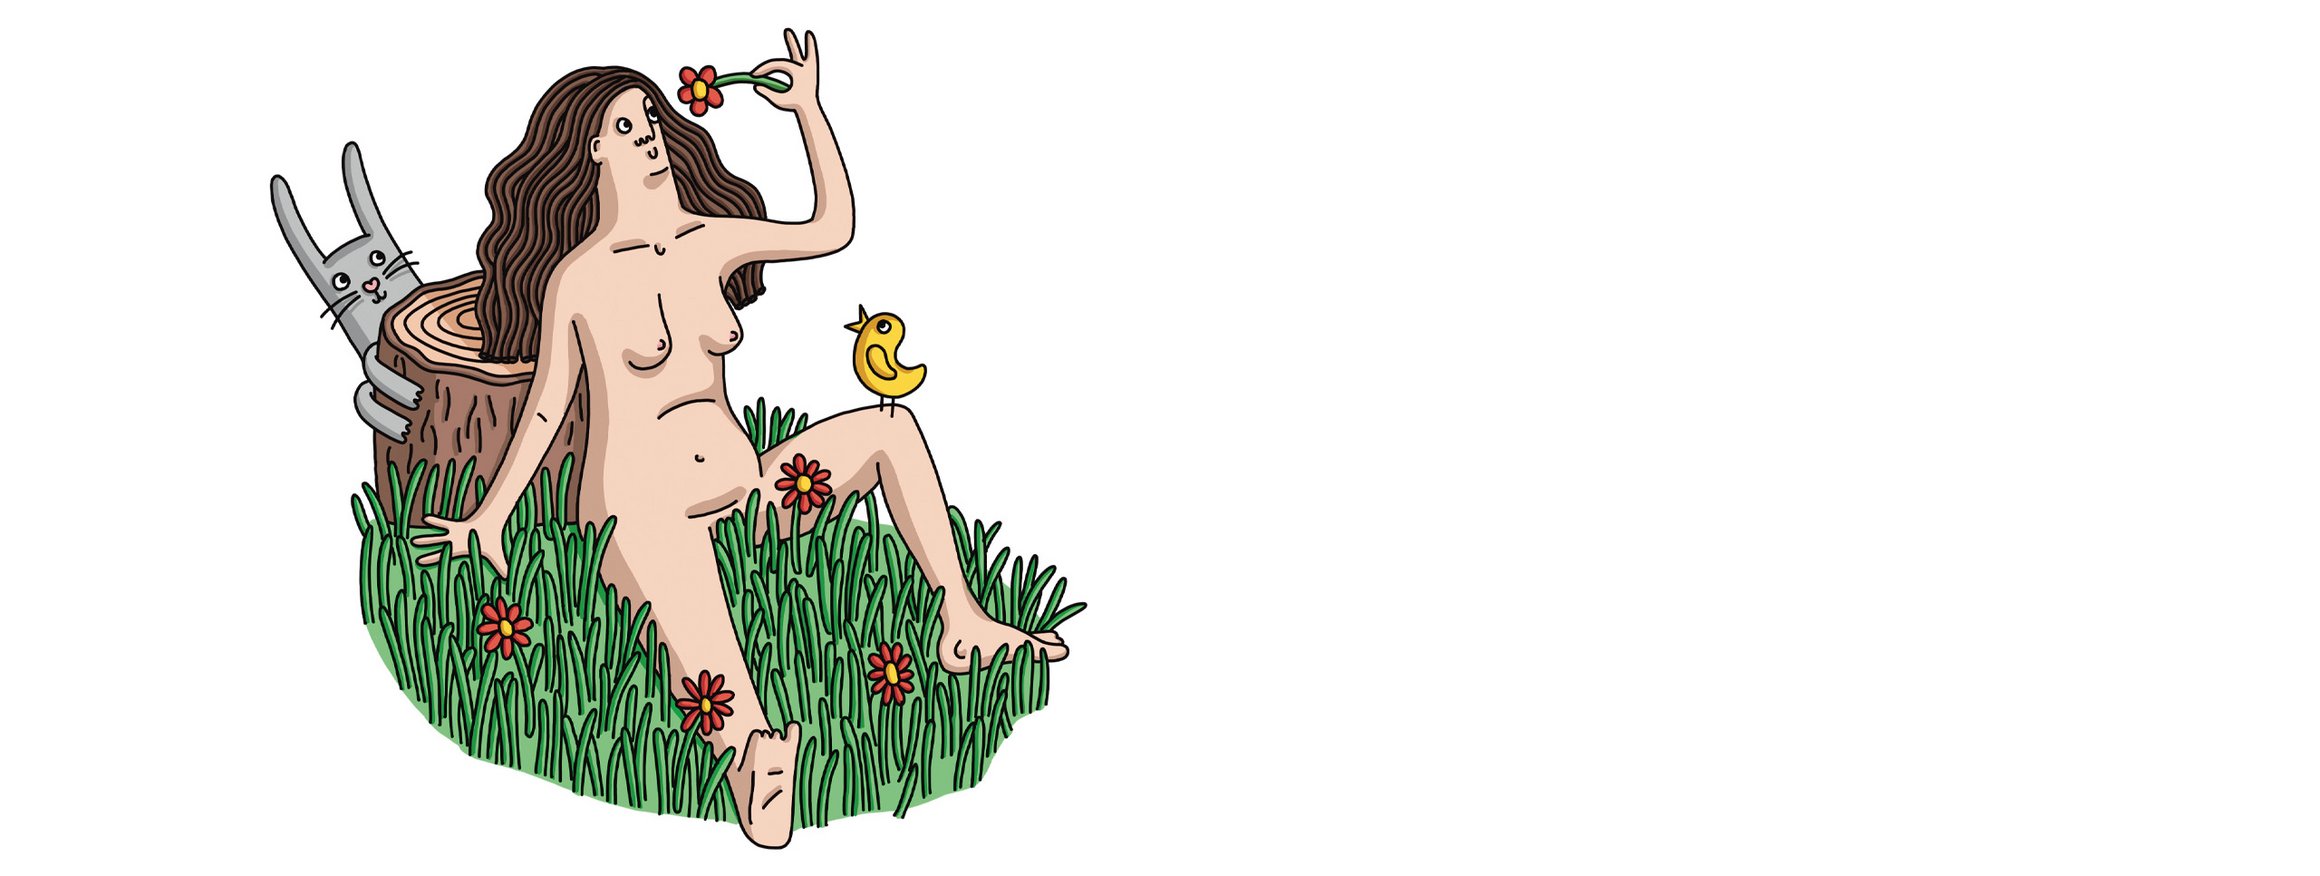 Die Illustration zeigt eine Frau mit langen Haaren, die zufrieden nackt im Gras sitzt, auf ihrem Knie ein Vogel und daneben ein Hase